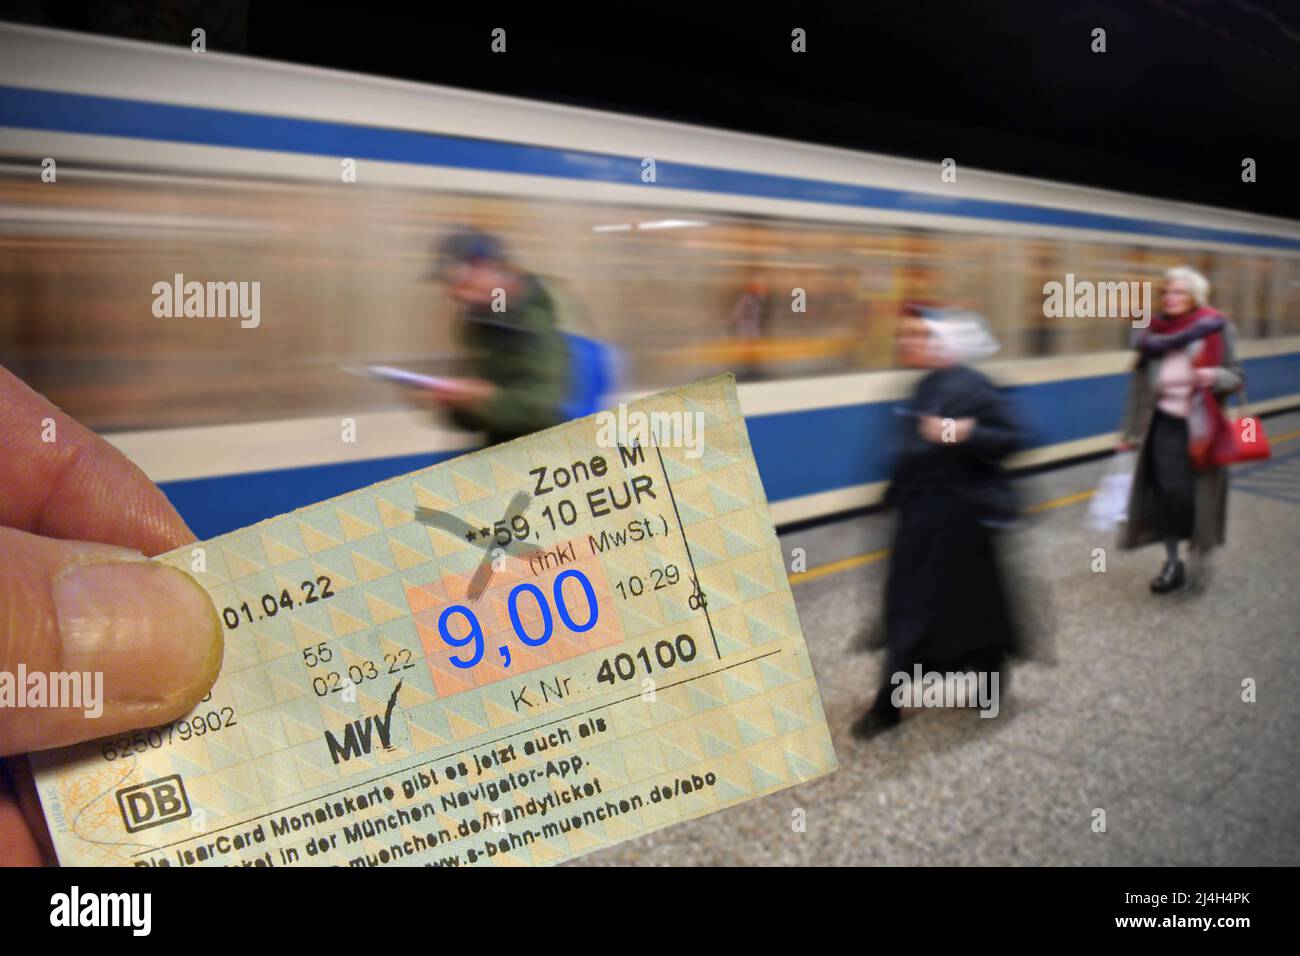 Munich, Allemagne. 15th avril 2022. MONTAGE PHOTO: Sujet image billet  9-euro pour bus et train: Quand vient-il et comment fonctionne-t-il? Métro  de Munich. Les passagers attendent sur la plate-forme devant le train